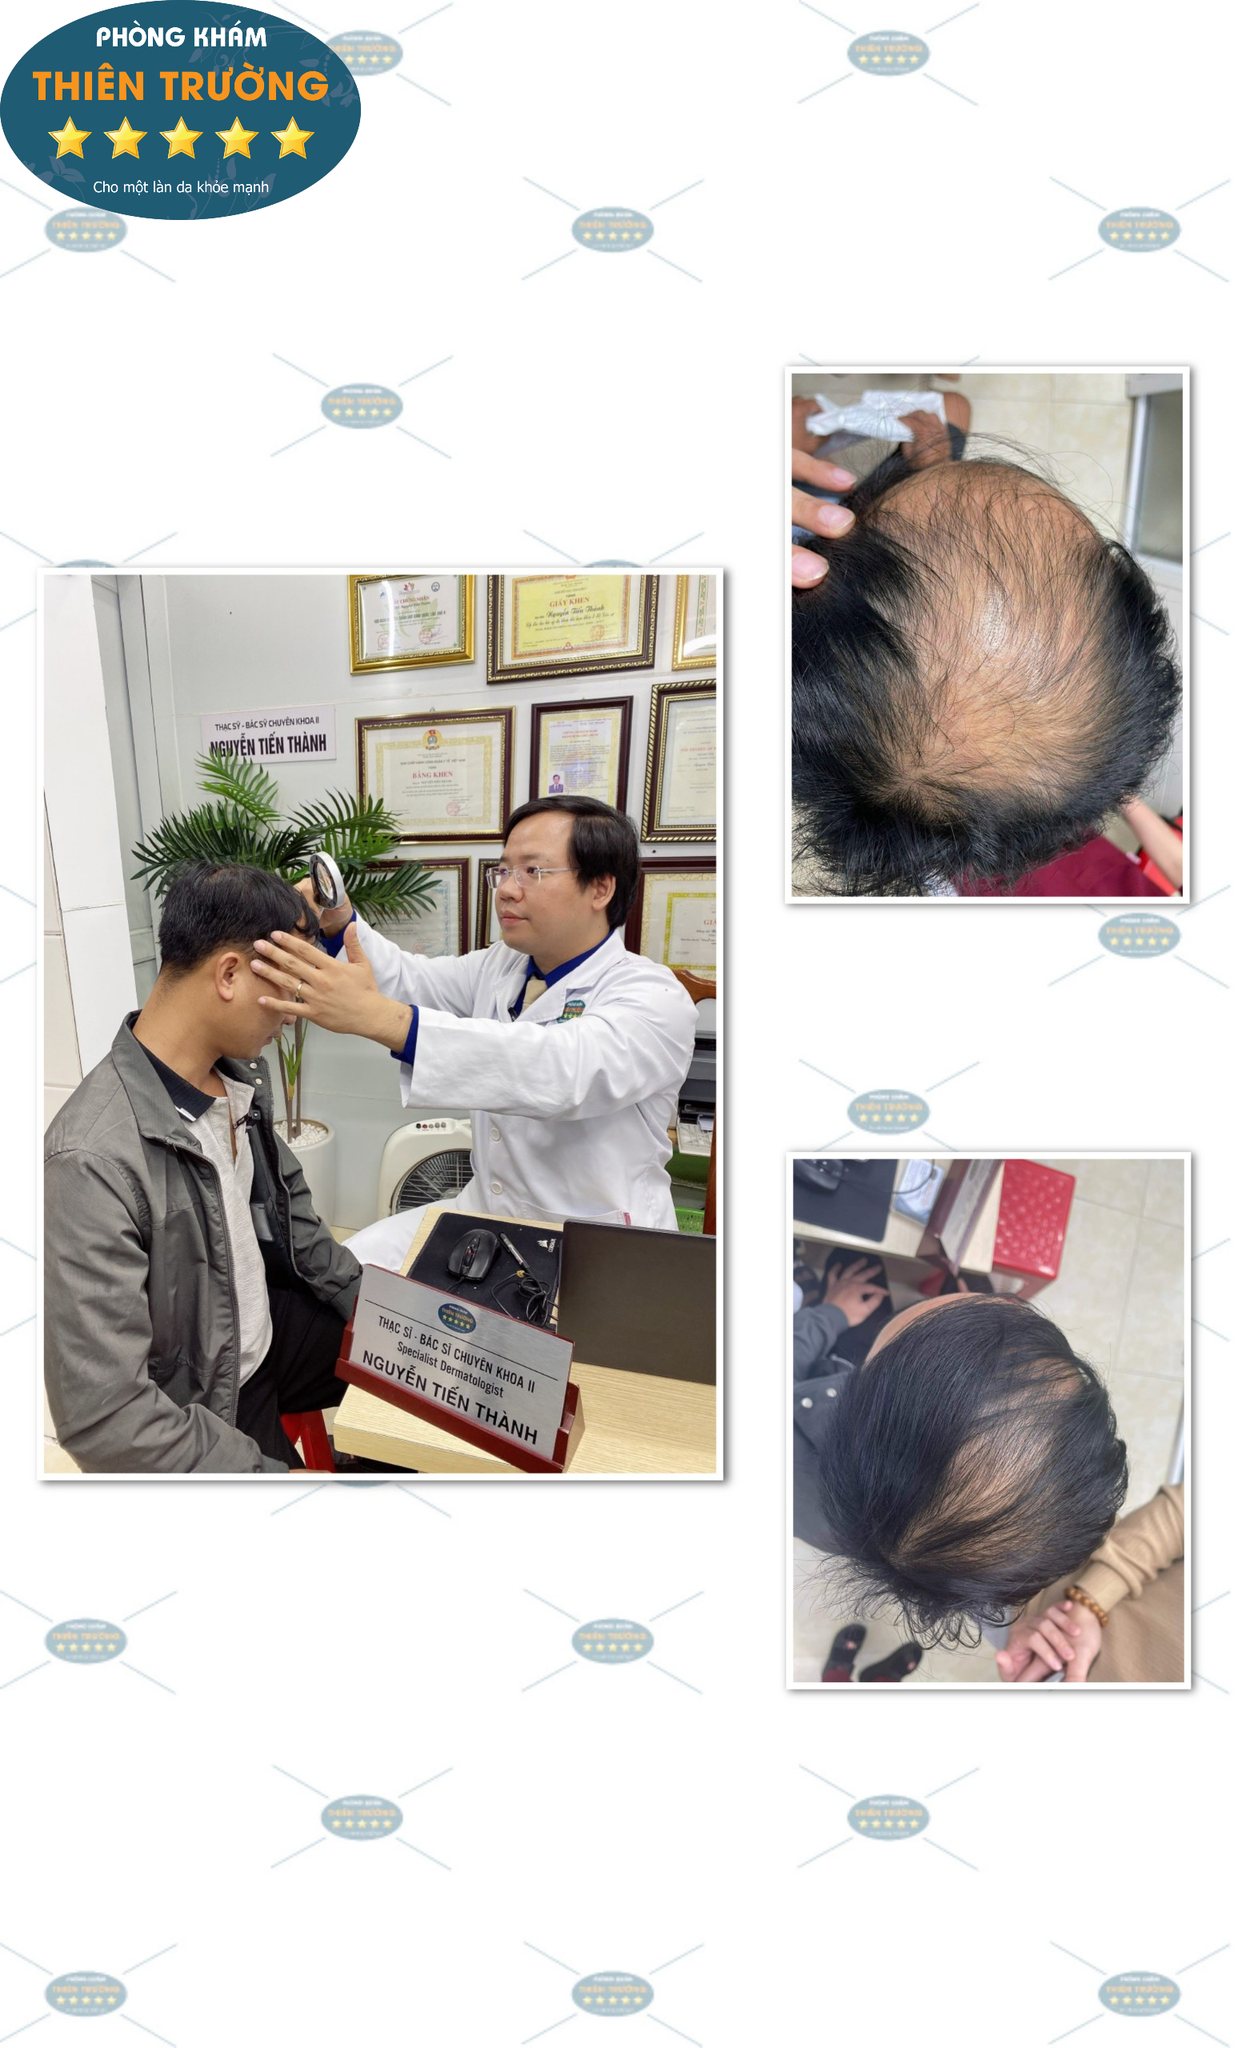 Hình ảnh: Thạc sĩ- Bác sĩ CK II Nguyễn Tiến Thành đang soi tóc cho khách hàng tại Phòng khám Da liễu thẩm mỹ Thiên Trường.